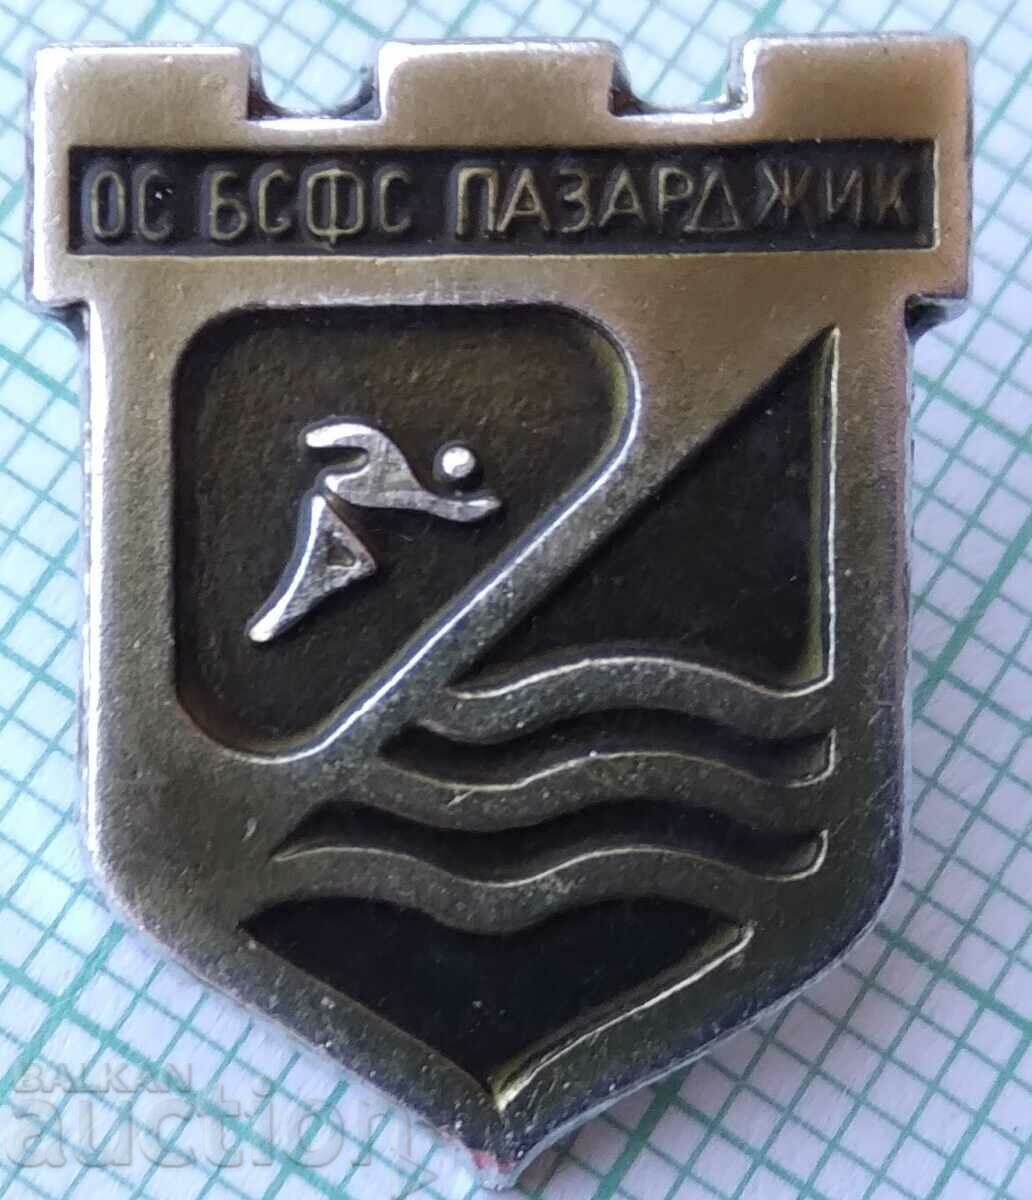 12655 Σήμα - ΛΣ του BSFS Pazardzhik